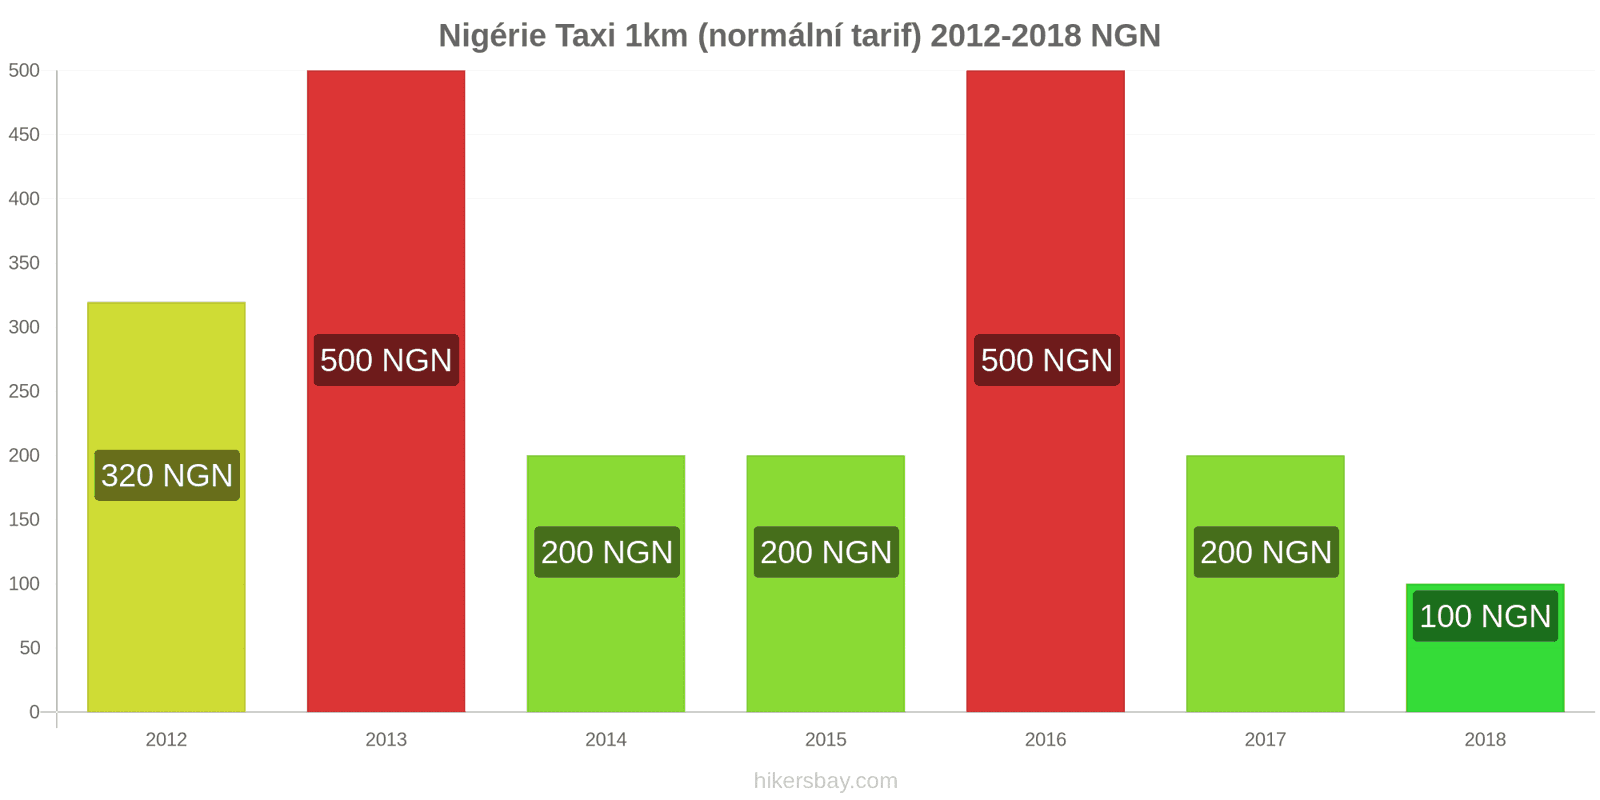 Nigérie změny cen Taxi 1km (normální tarif) hikersbay.com